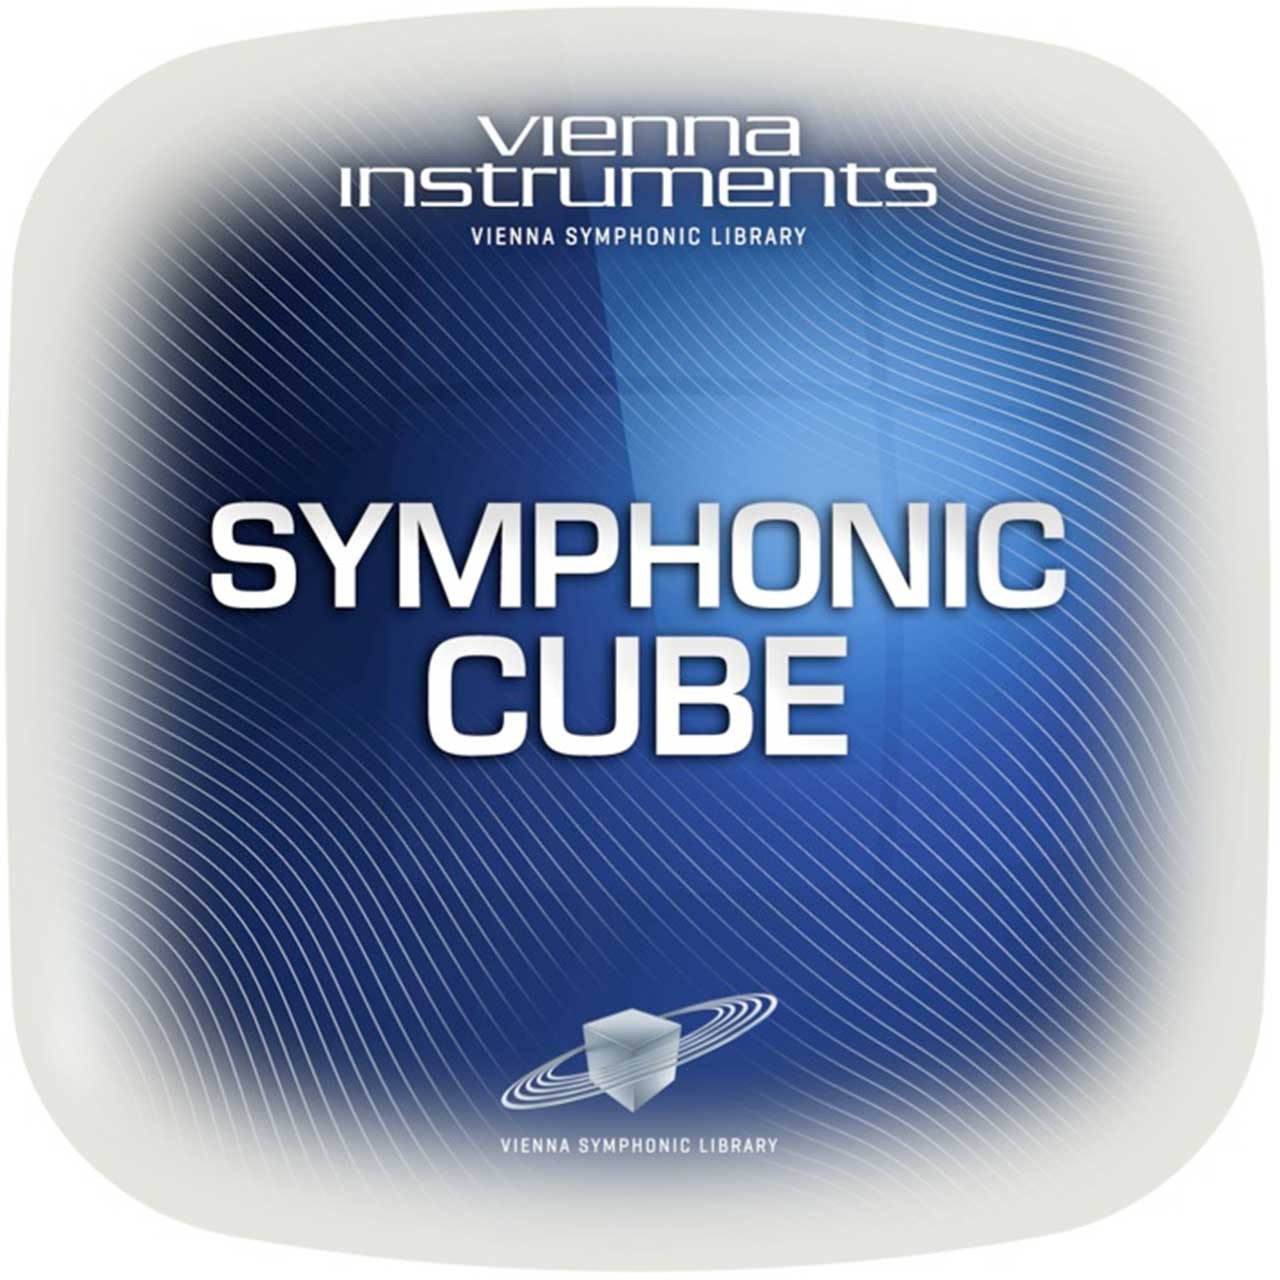 Software Instruments - Vienna Symphonic Library VSL - SYMPHONIC CUBE